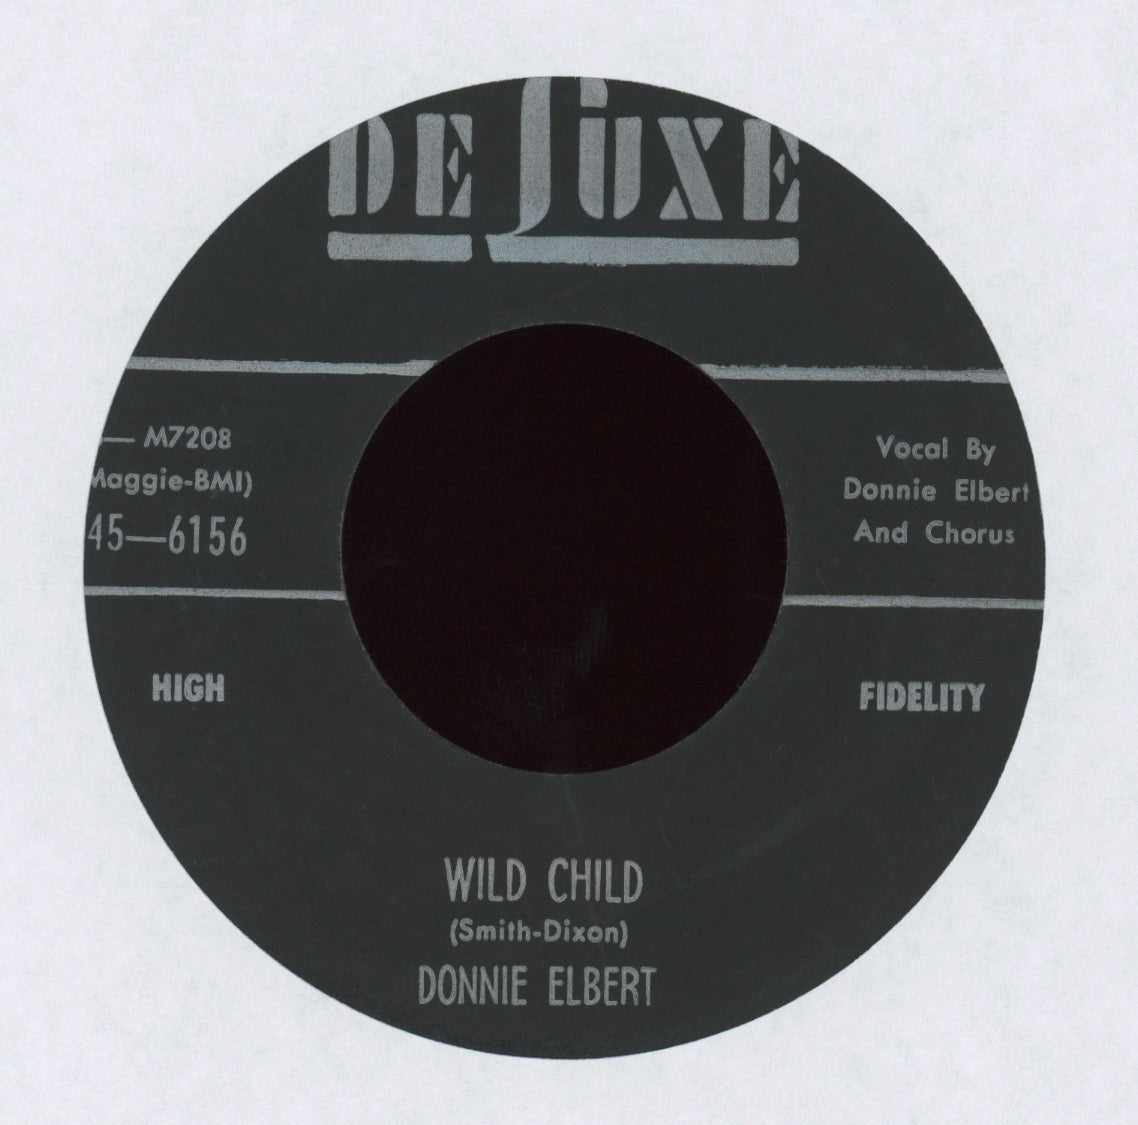 Donnie Elbert - Wild Child on DeLuxe